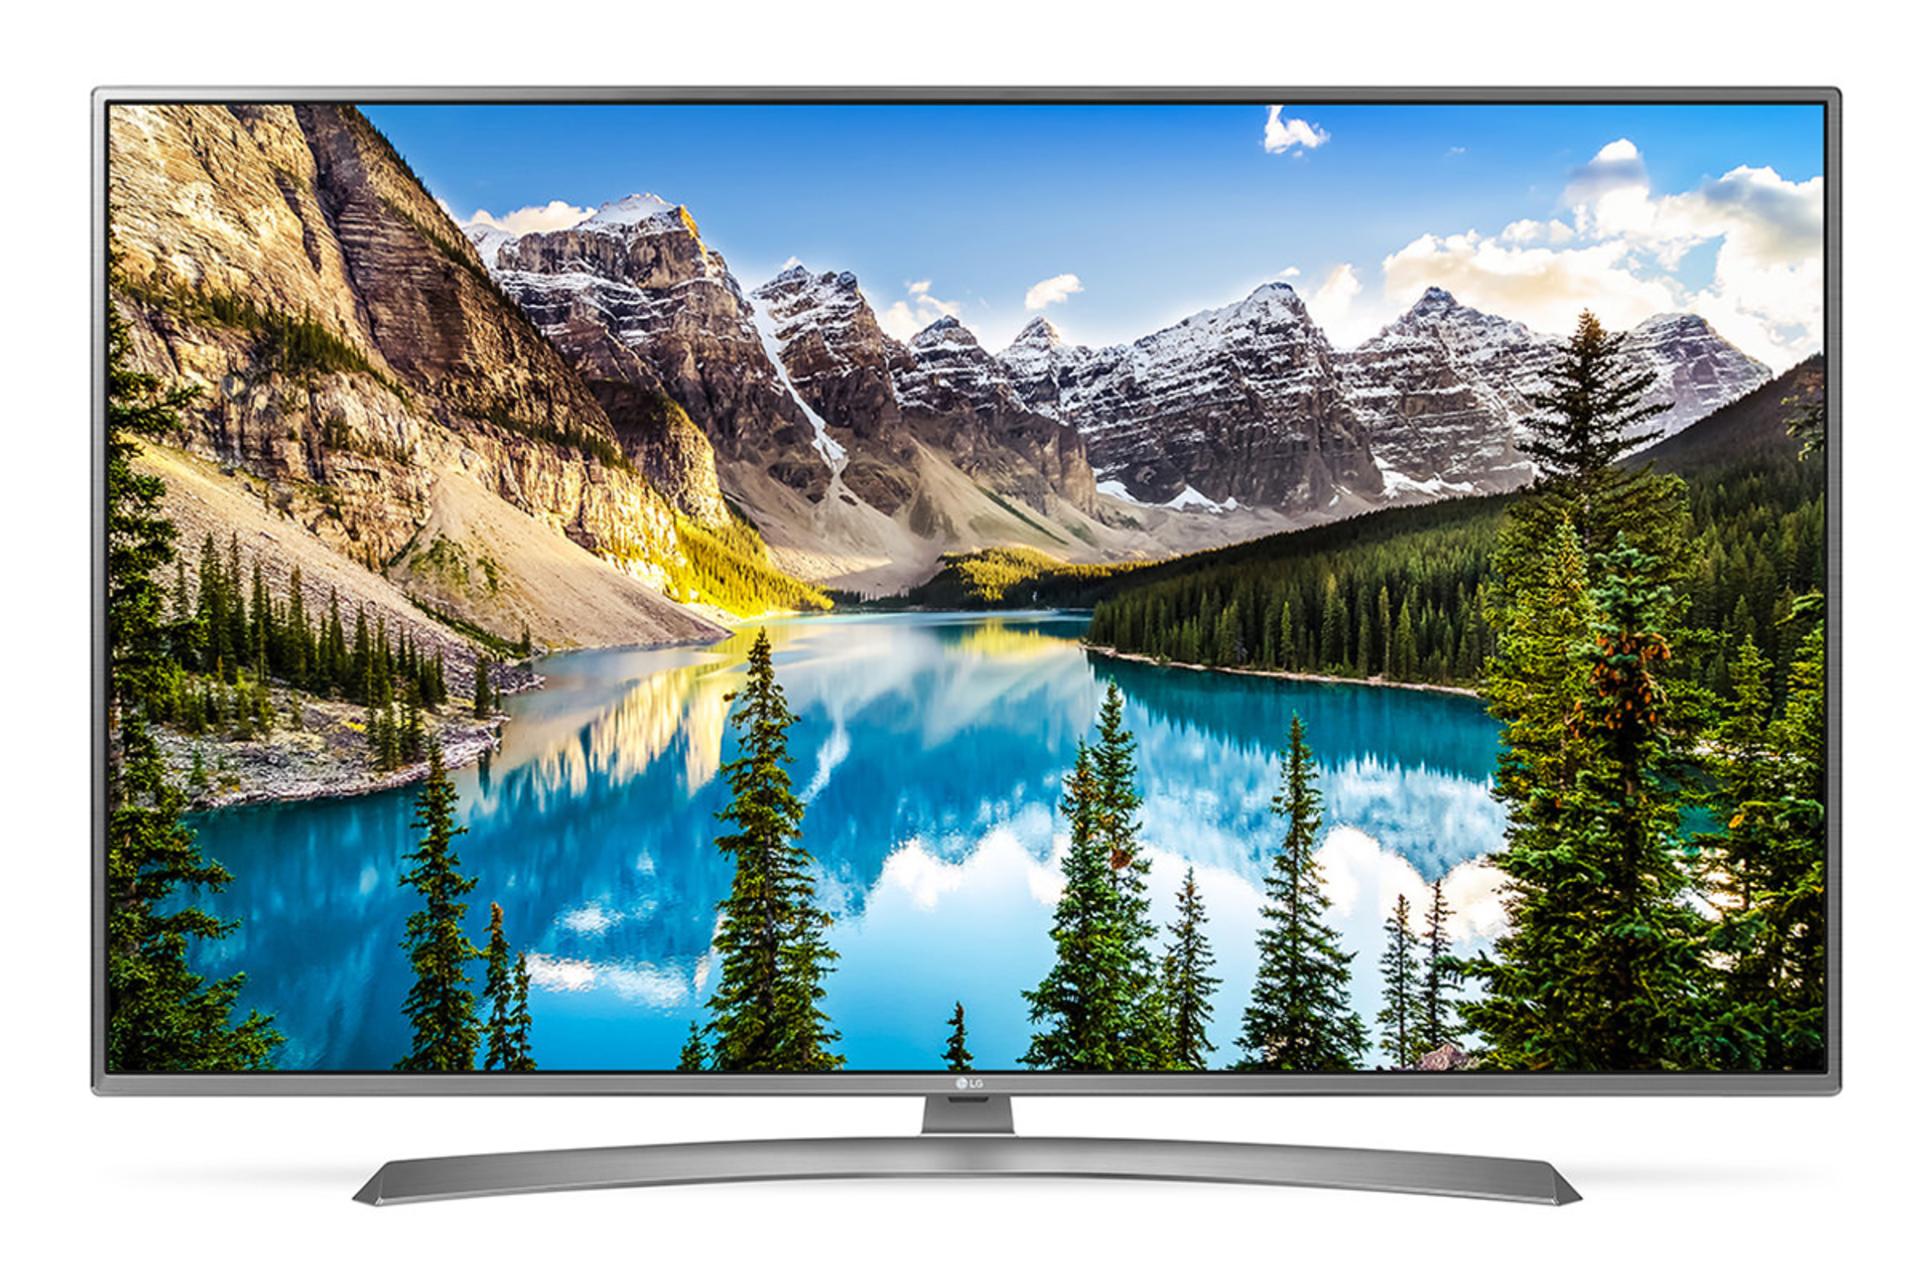 نمای جلو تلویزیون ال جی UJ6900 مدل 49 اینچ با بدنه نقره ای و صفحه روشن با نمایش منظره